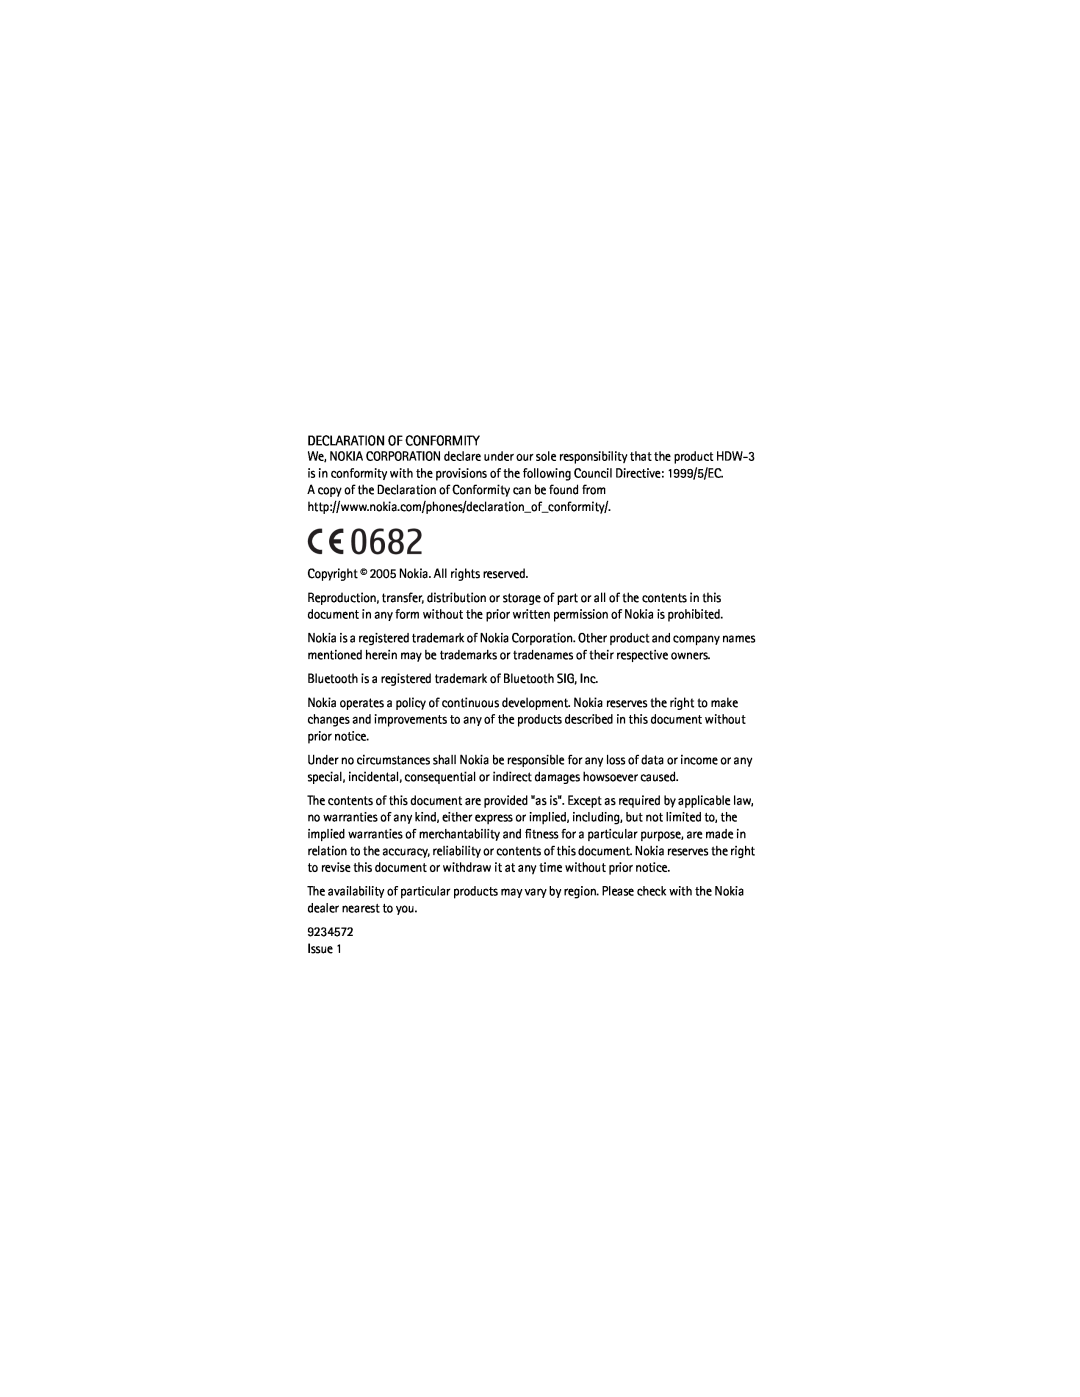 Nokia HDW-3 manual Declaration Of Conformity 